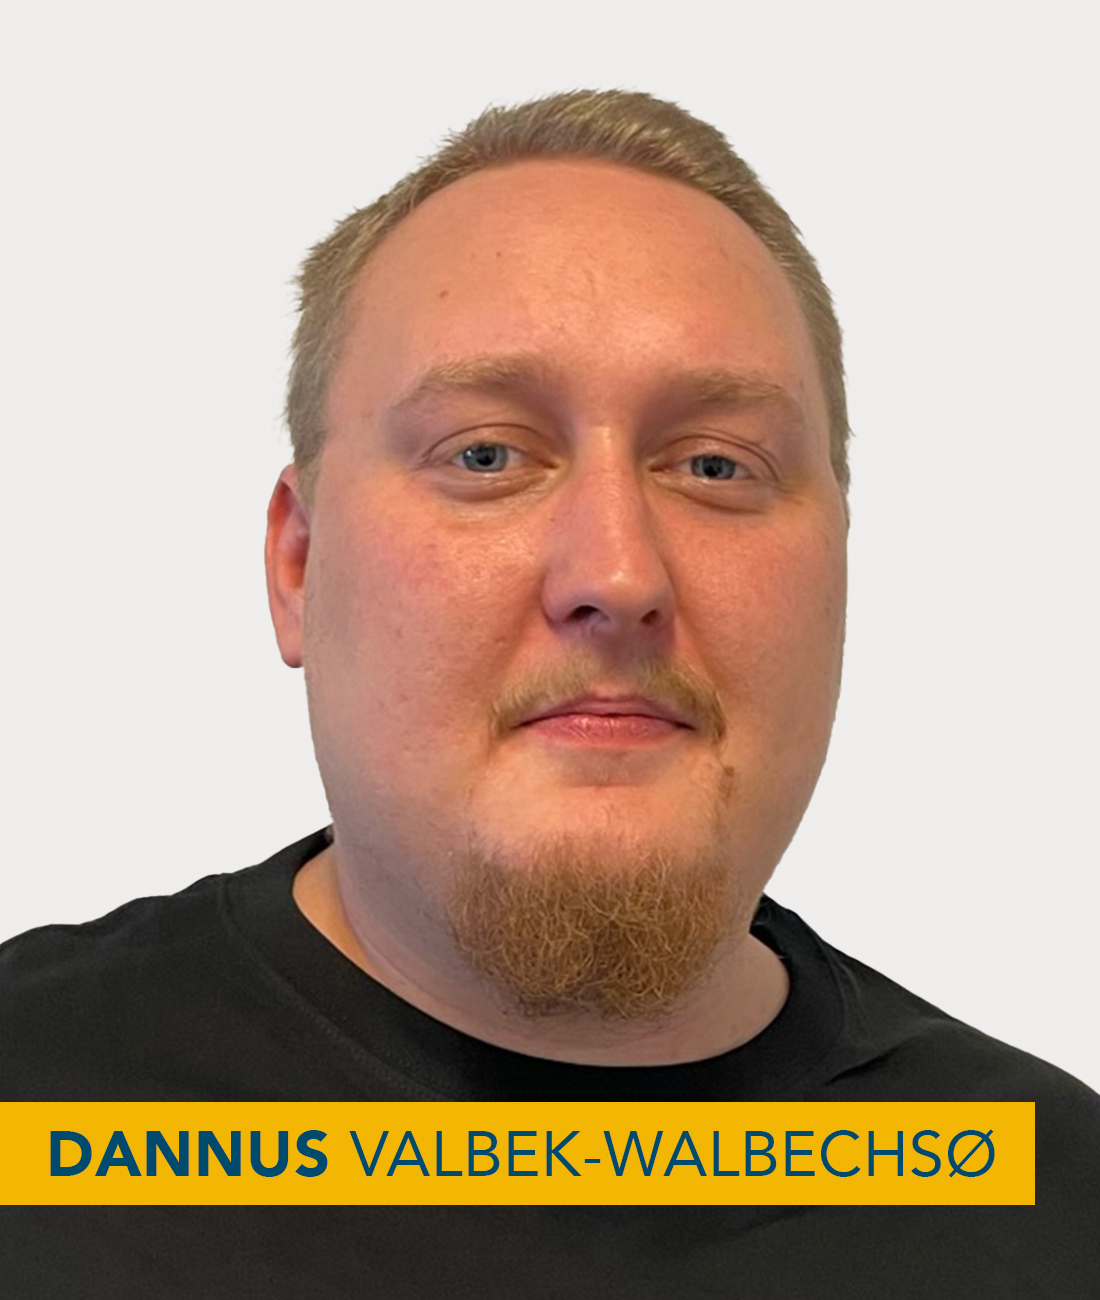 Dannus Valbeck-Walbechsø